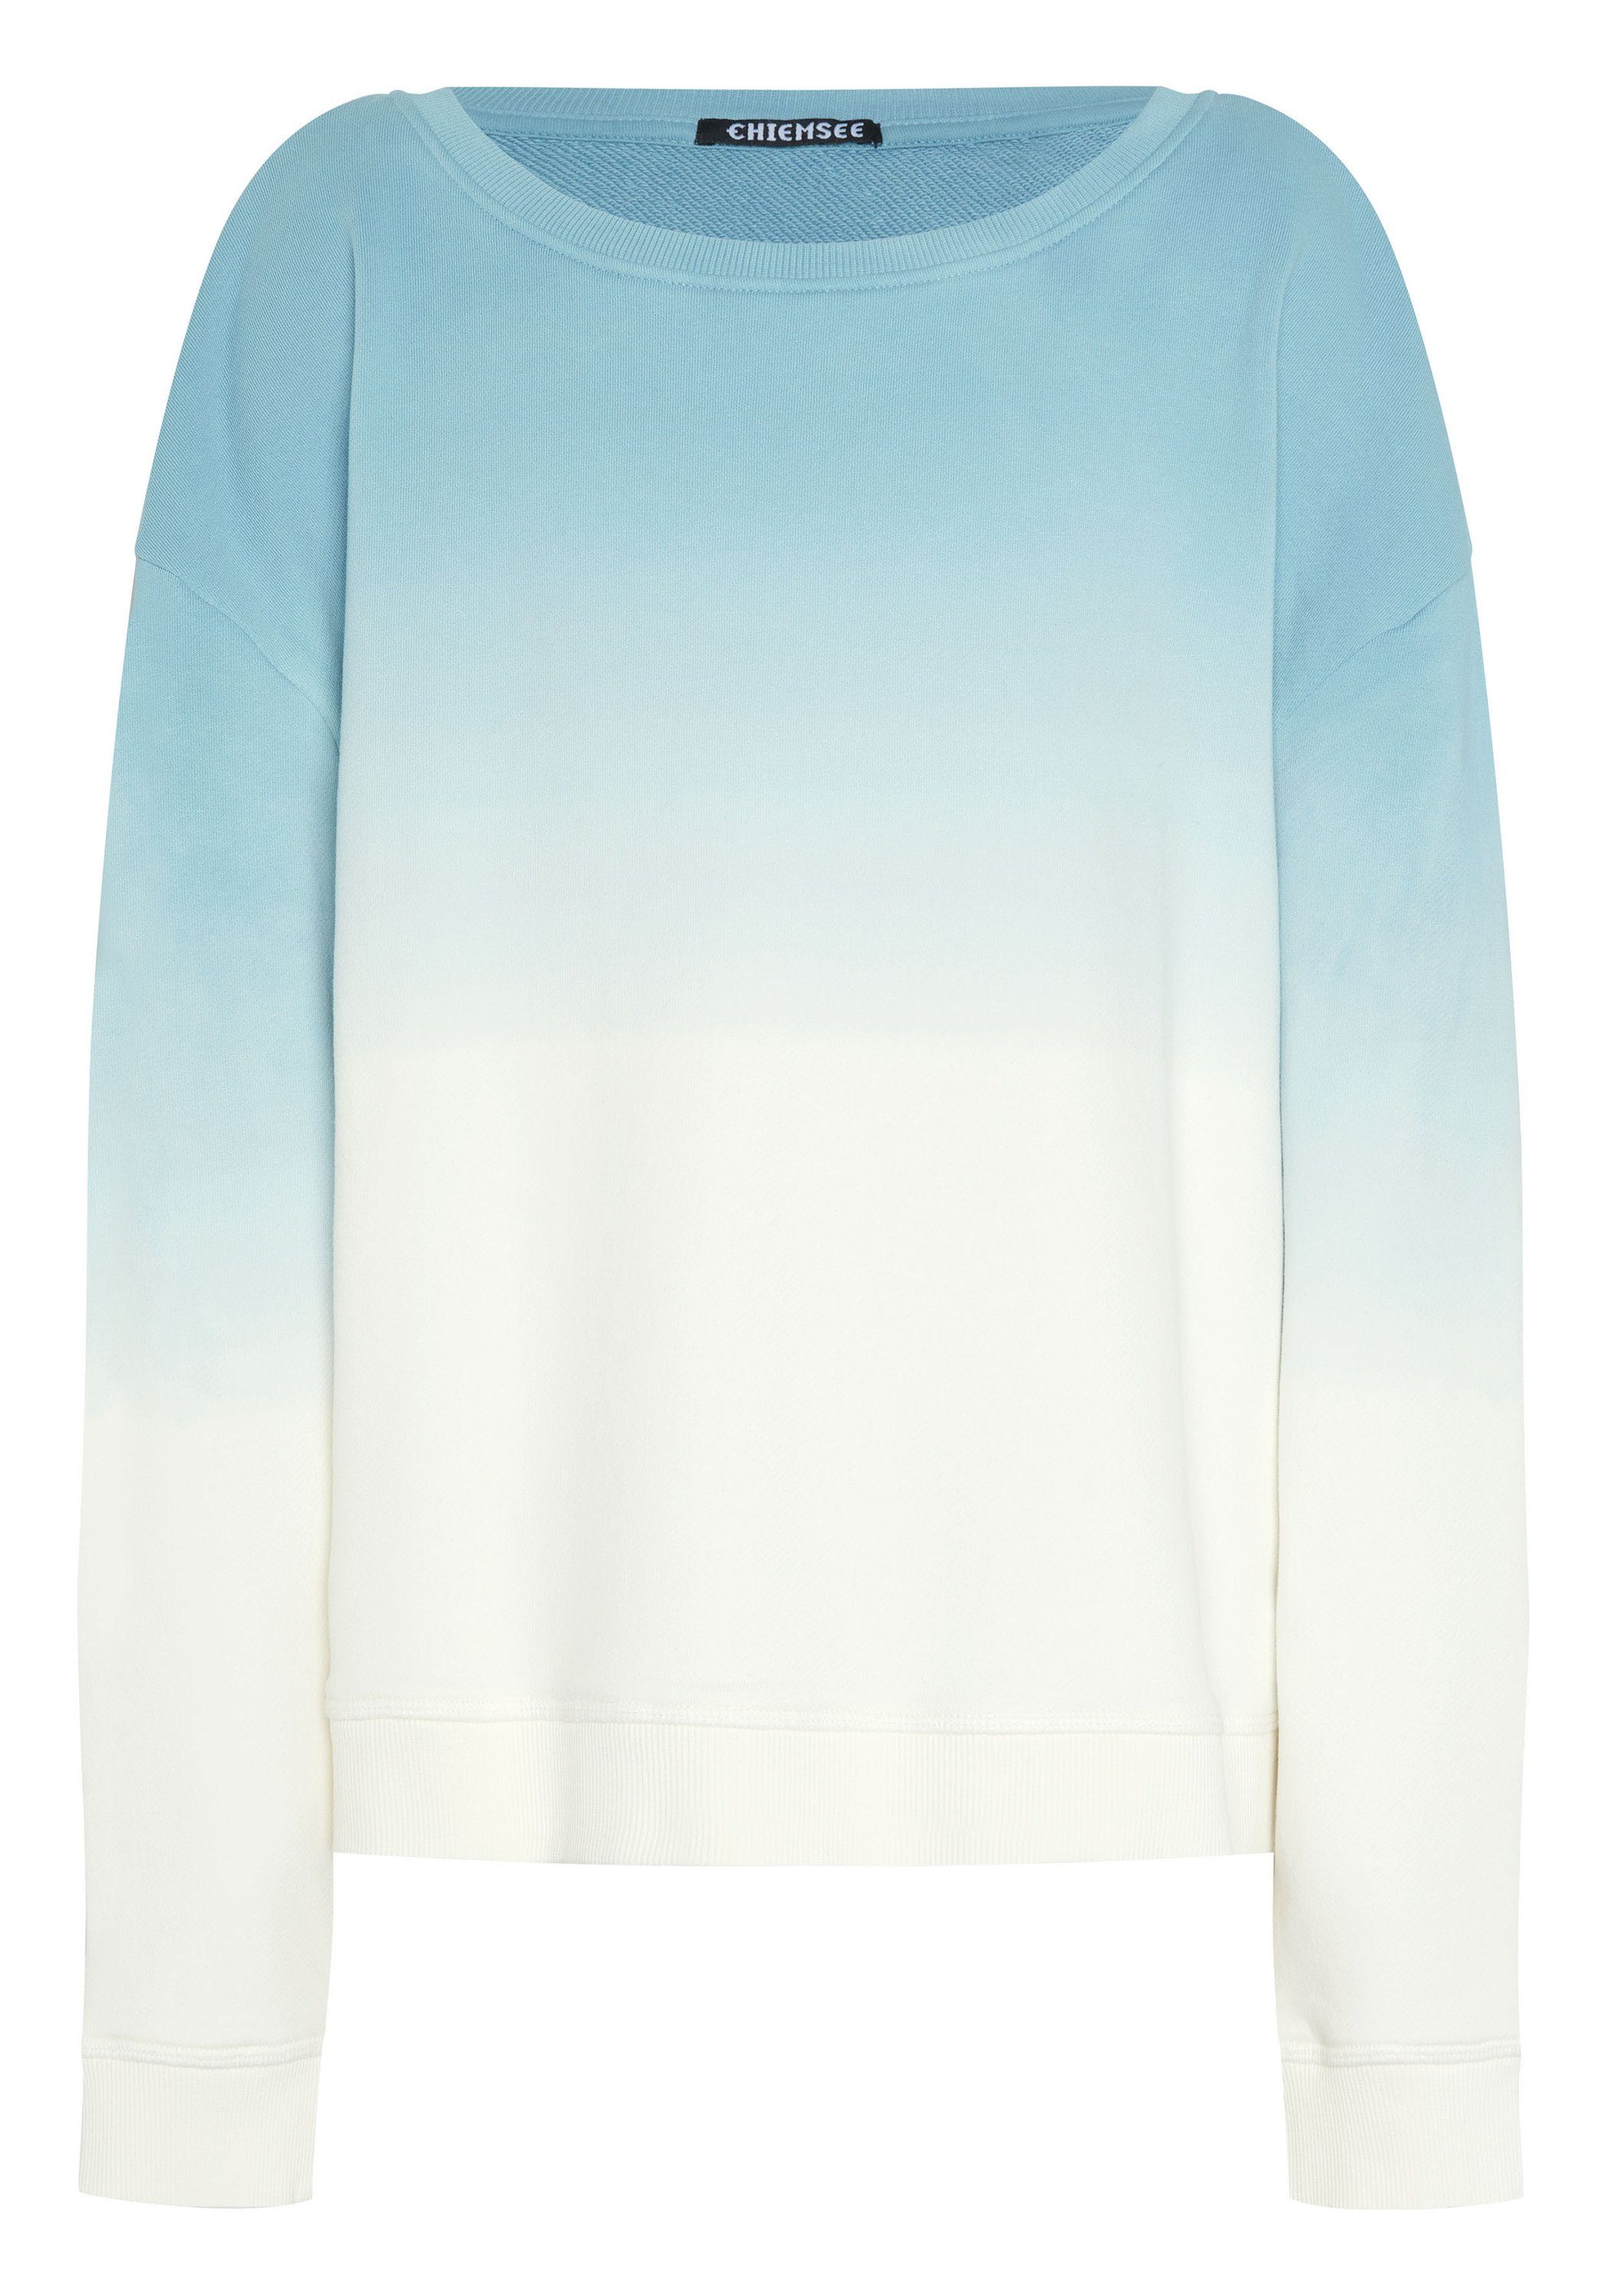 Chiemsee Sweatshirt Sweater mit Print und Farbverlauf 1 4510 Medium Blue/White